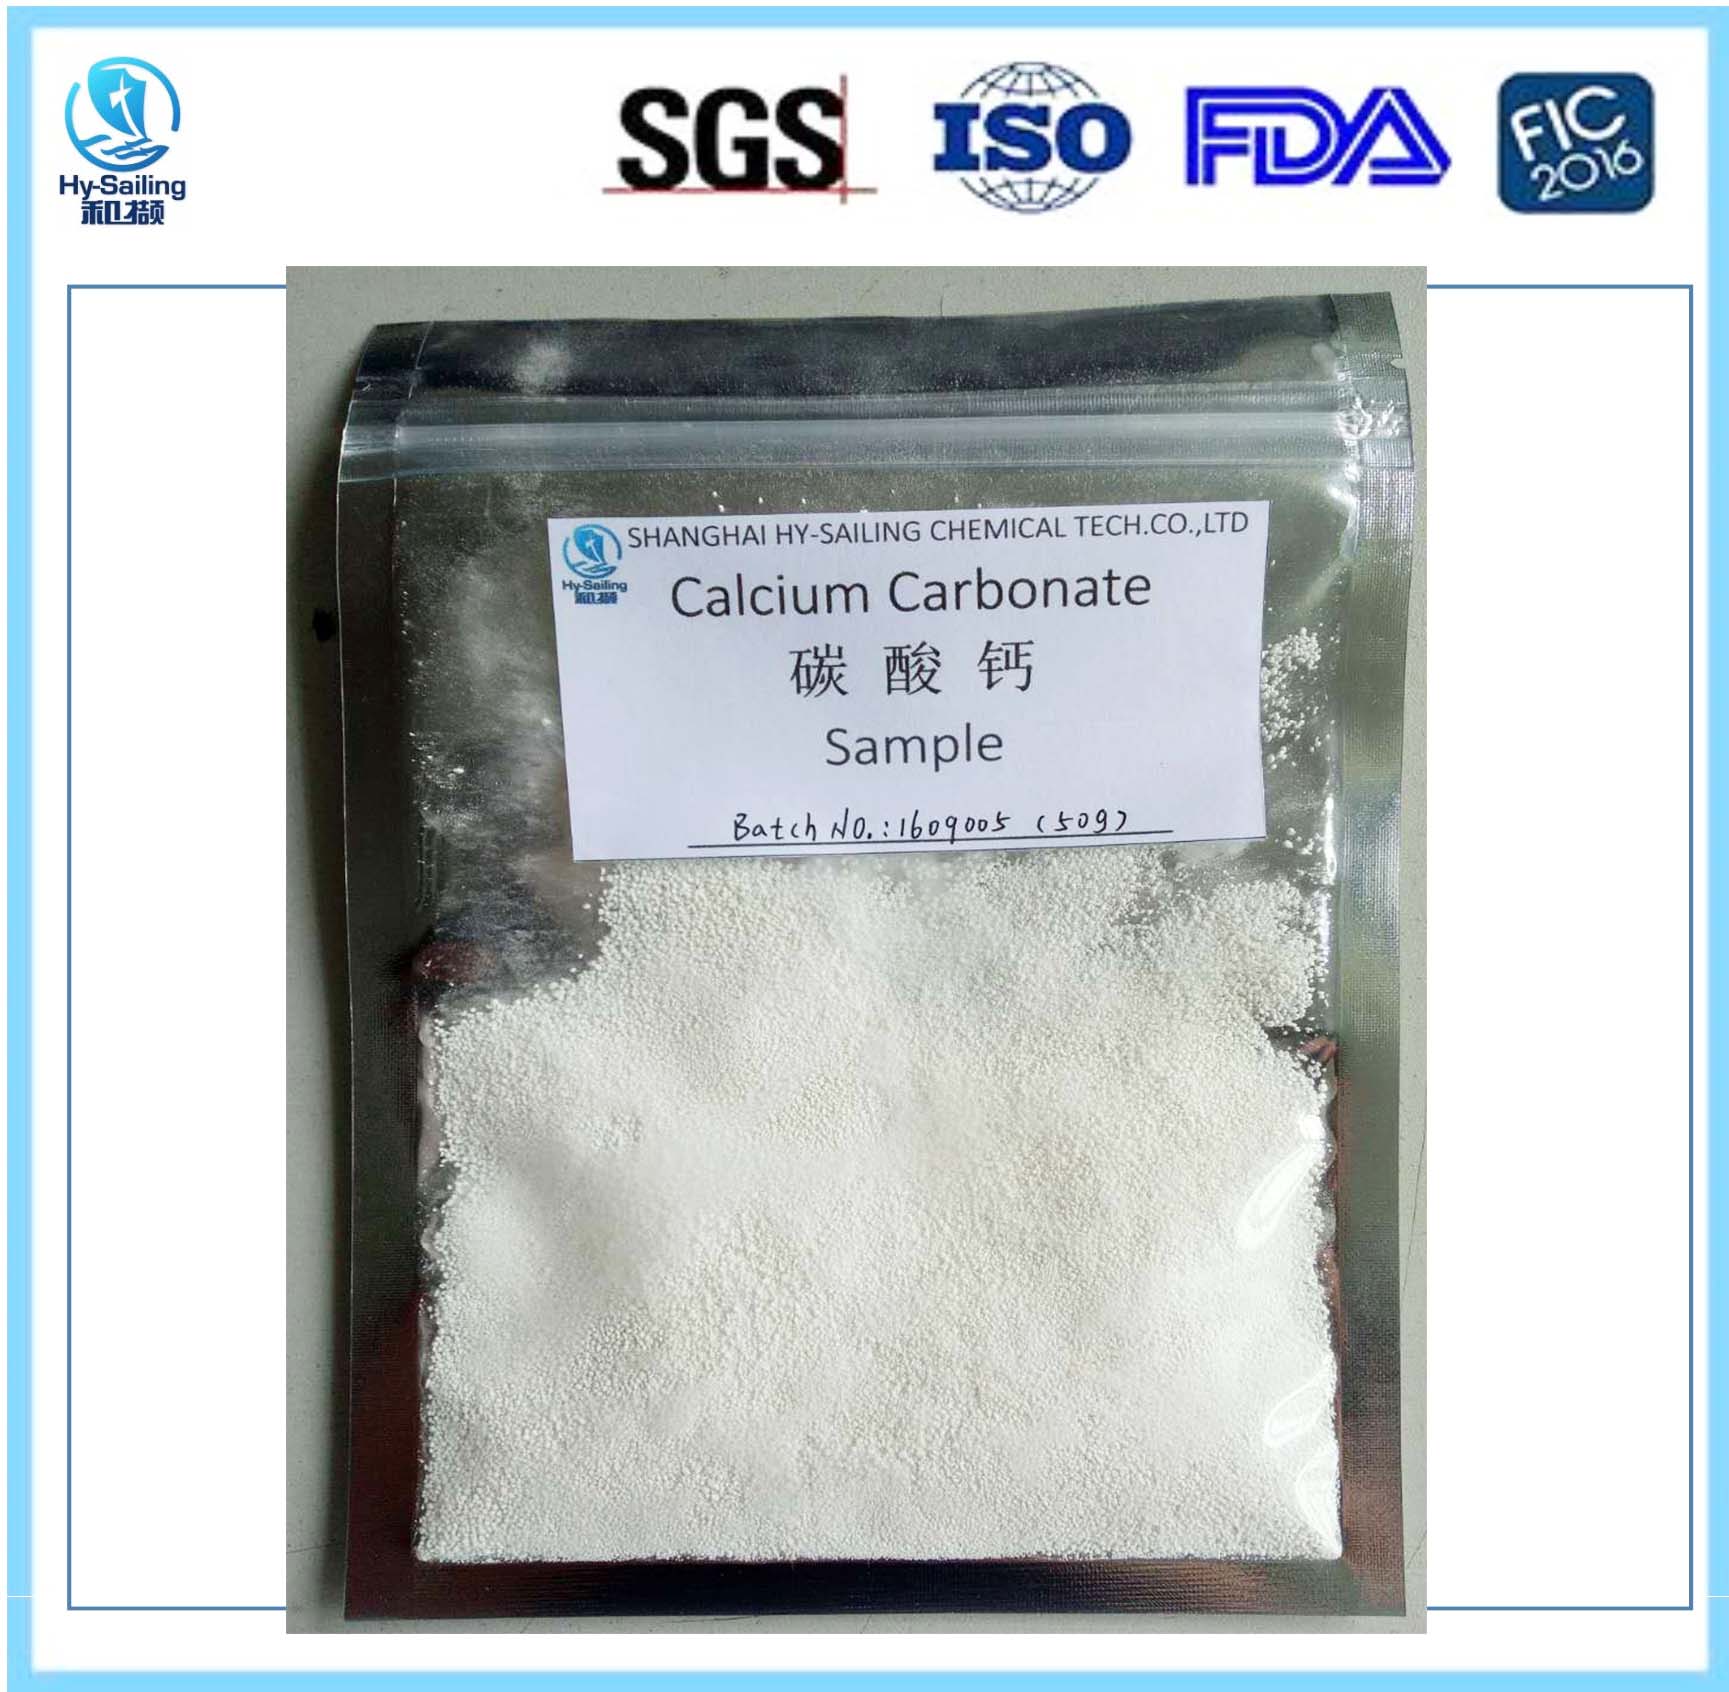  Calcium Carbonate Granule for Medicine Tablet Using